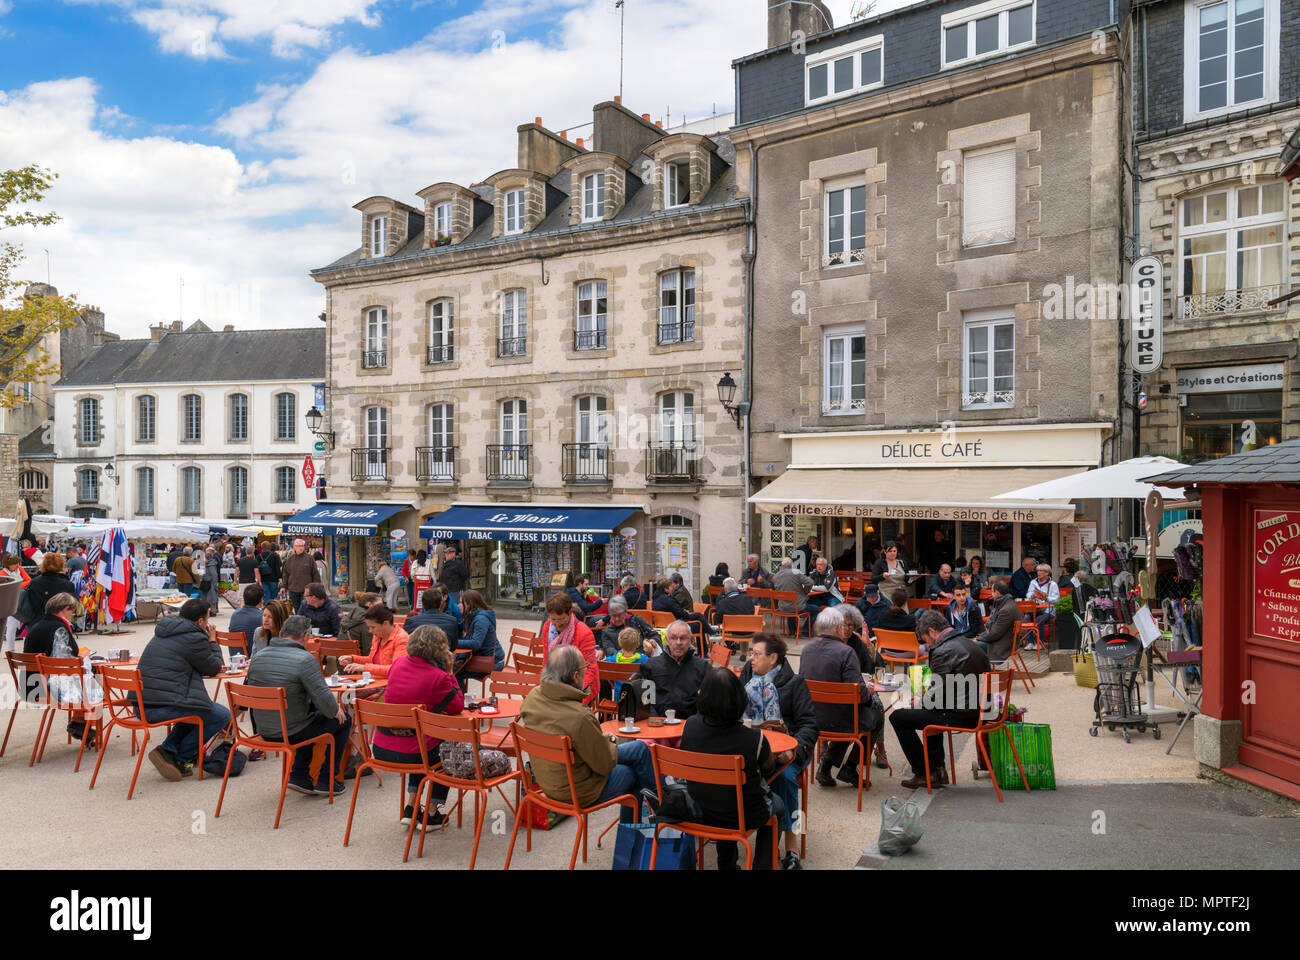 Cafe nella città vecchia, Place des Lices, Vannes, Brittany, Francia Foto Stock